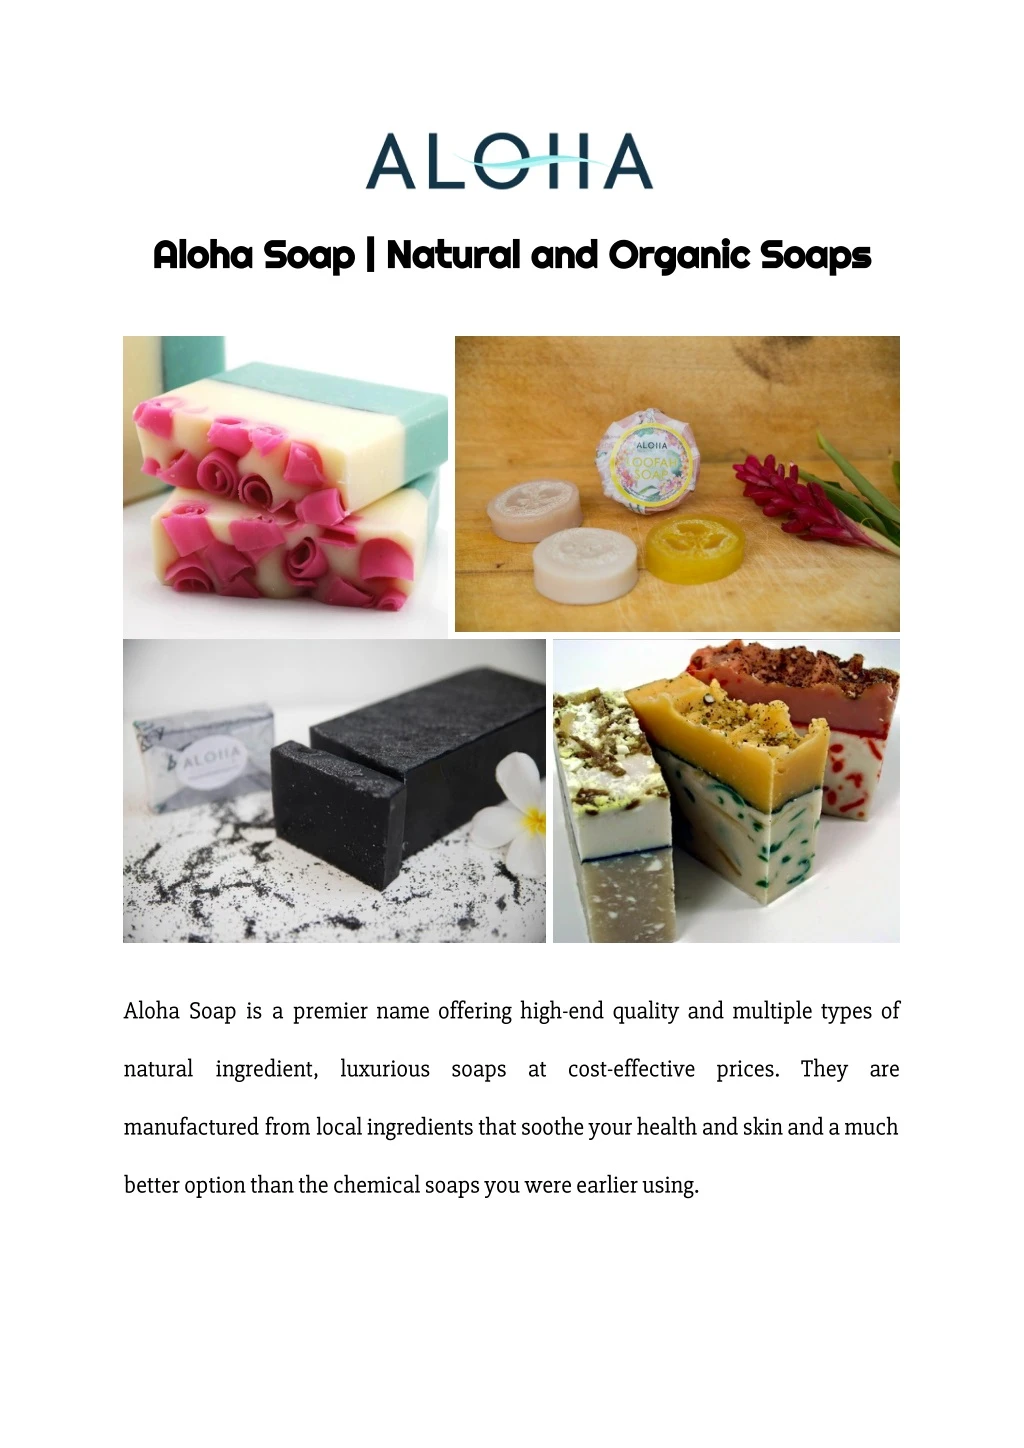 aloha soap natural and organic soaps